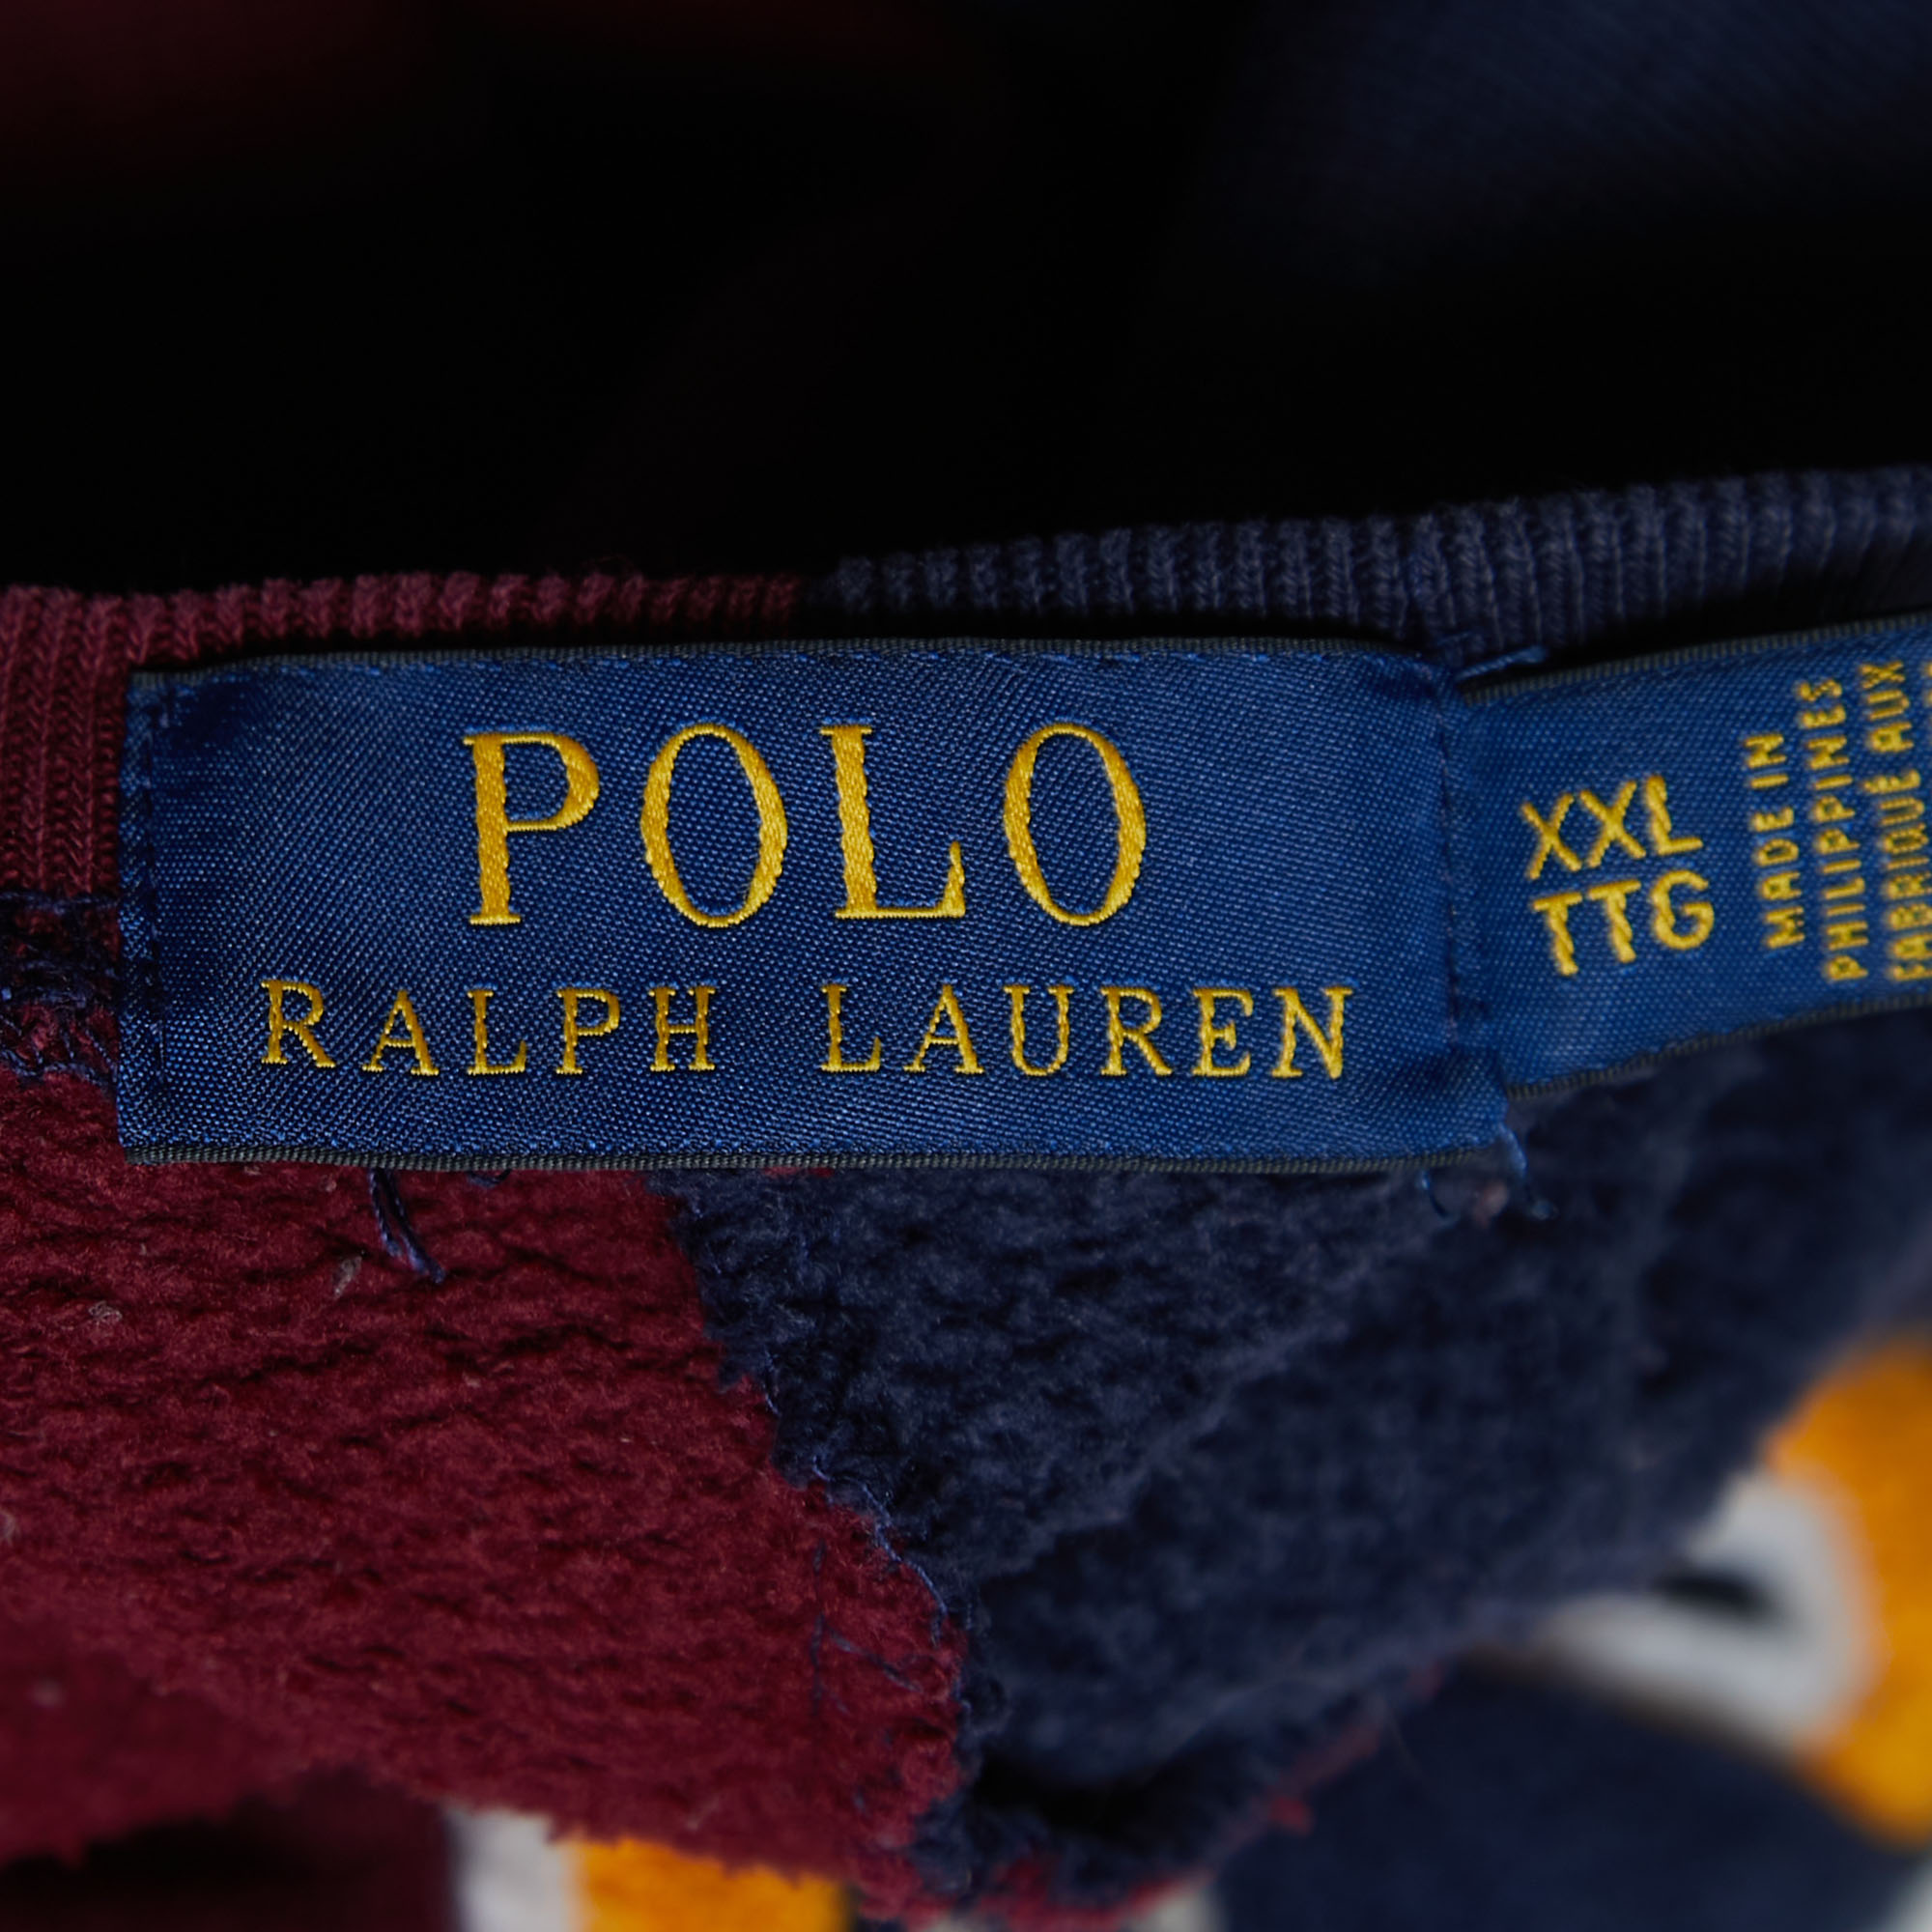 Polo Ralph Lauren Navy Blue/Red Embroidered Cotton Knit Crew Neck Sweatshirt XXL